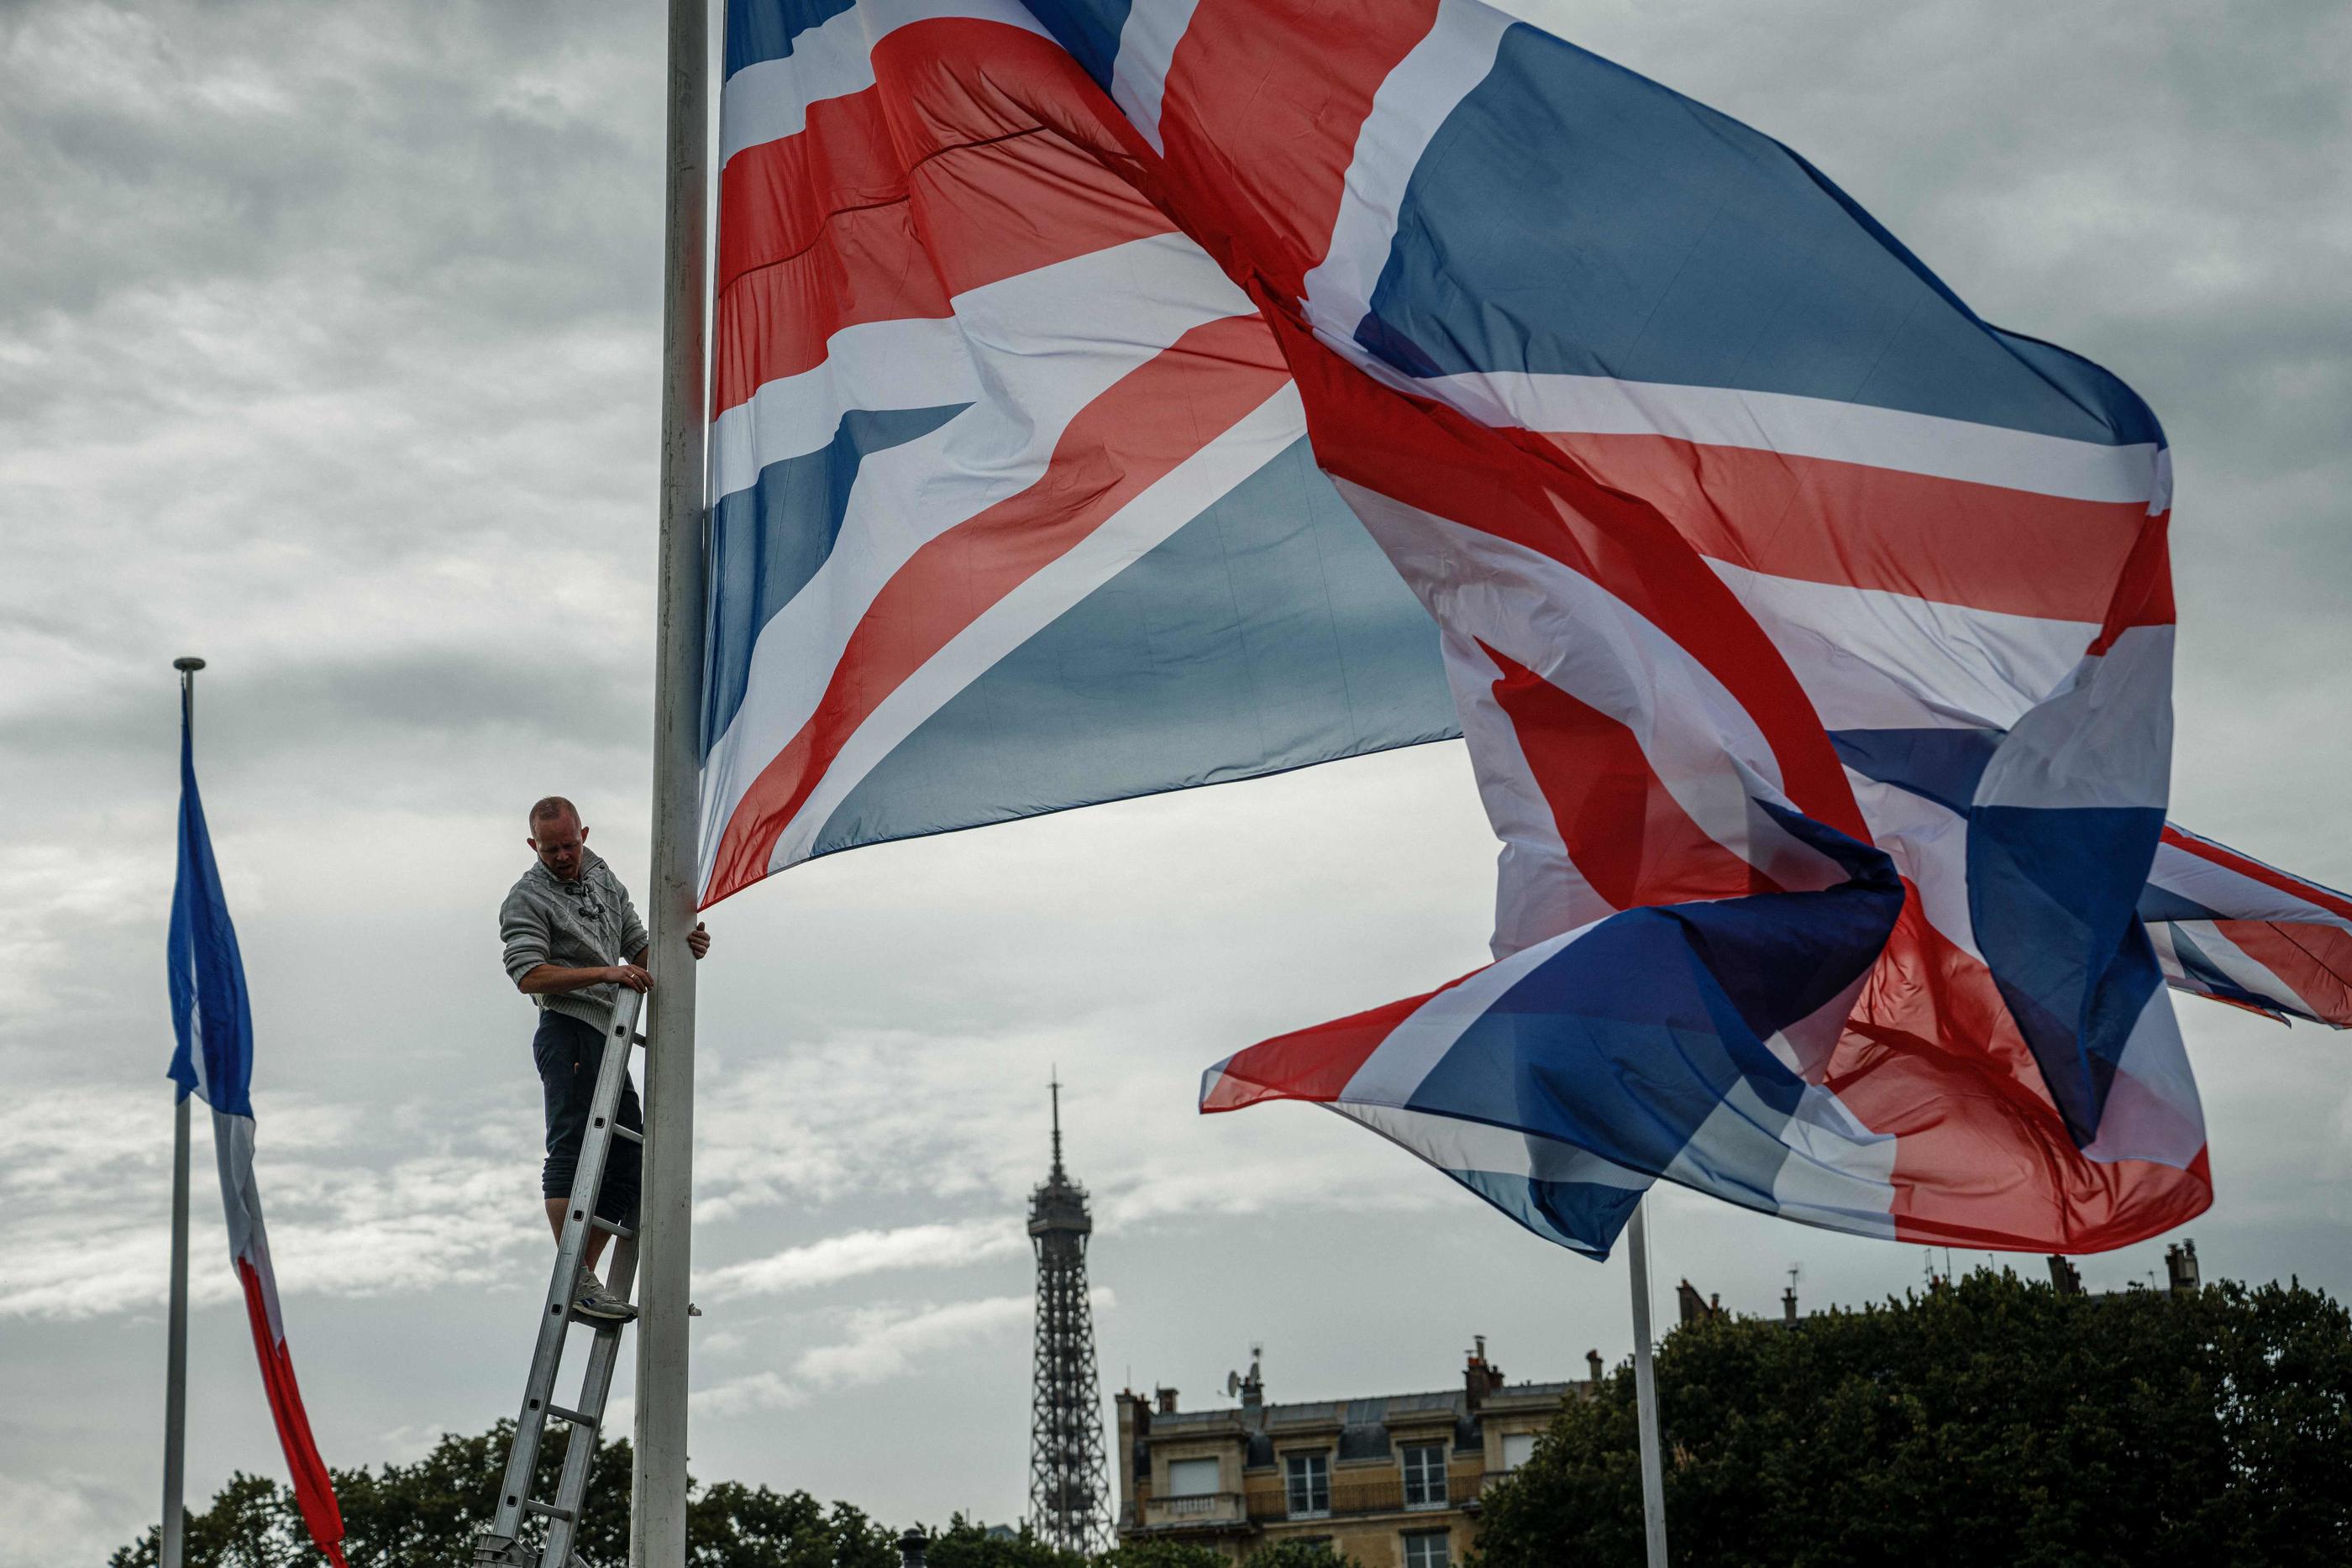 Des drapeaux anglais et français ont été installés dans le secteur des Invalides, lundi, pour la venue de Charles et Camilla. AFP/Dimitar DILKOFF